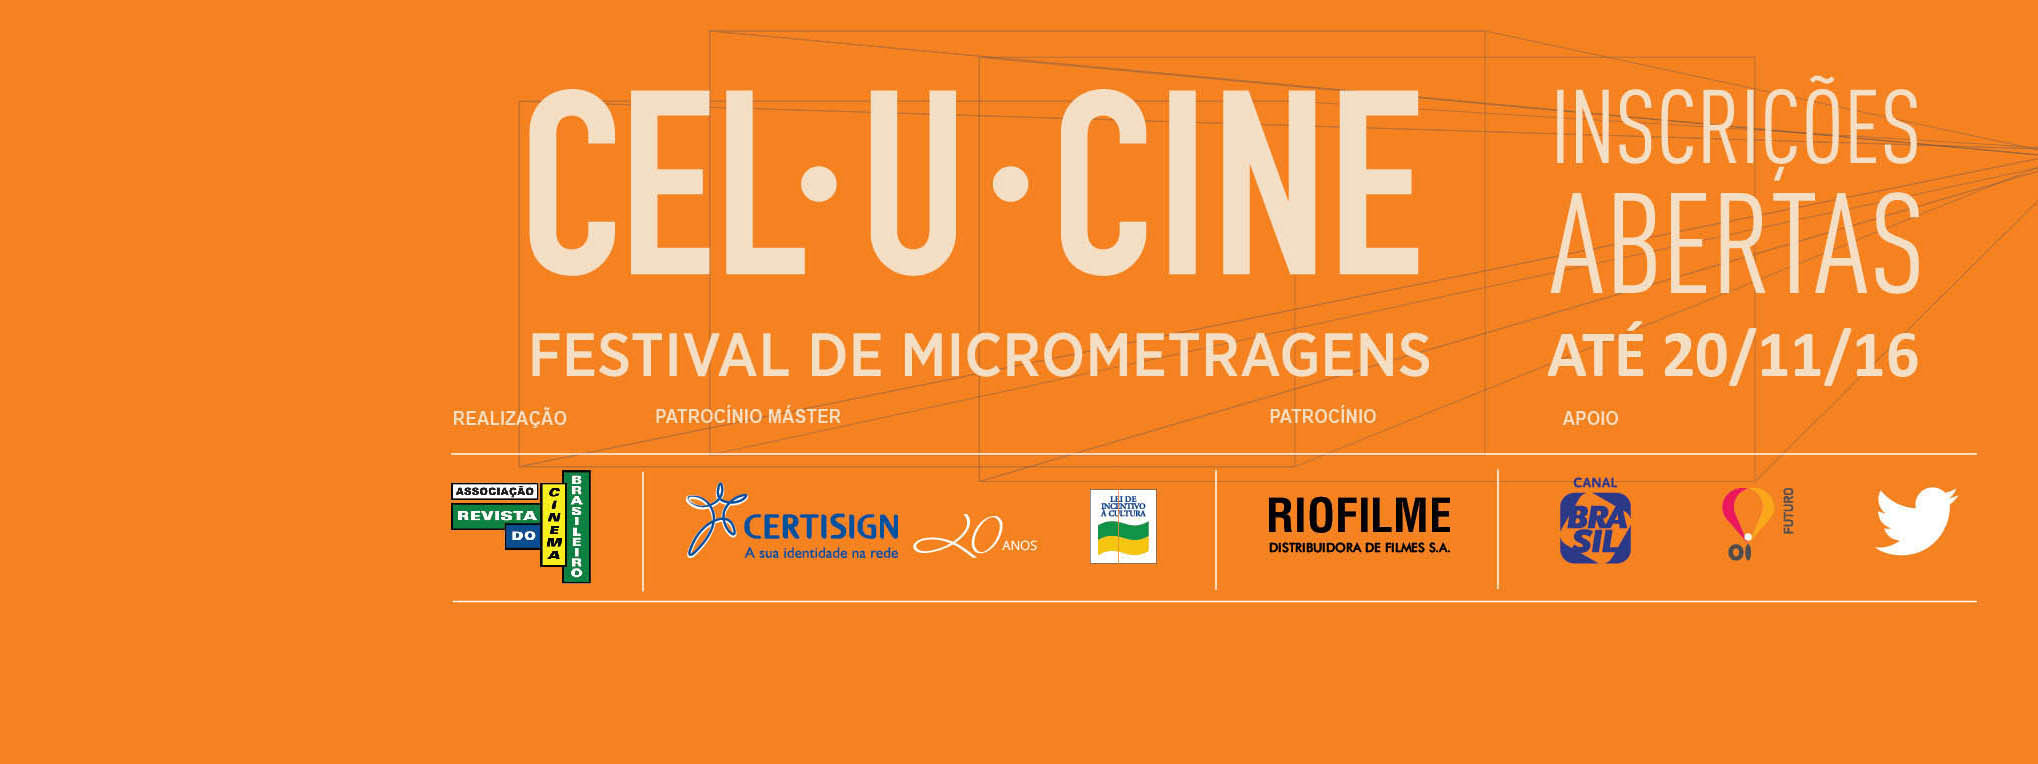 festival-celucine-de-micrometragens-2016